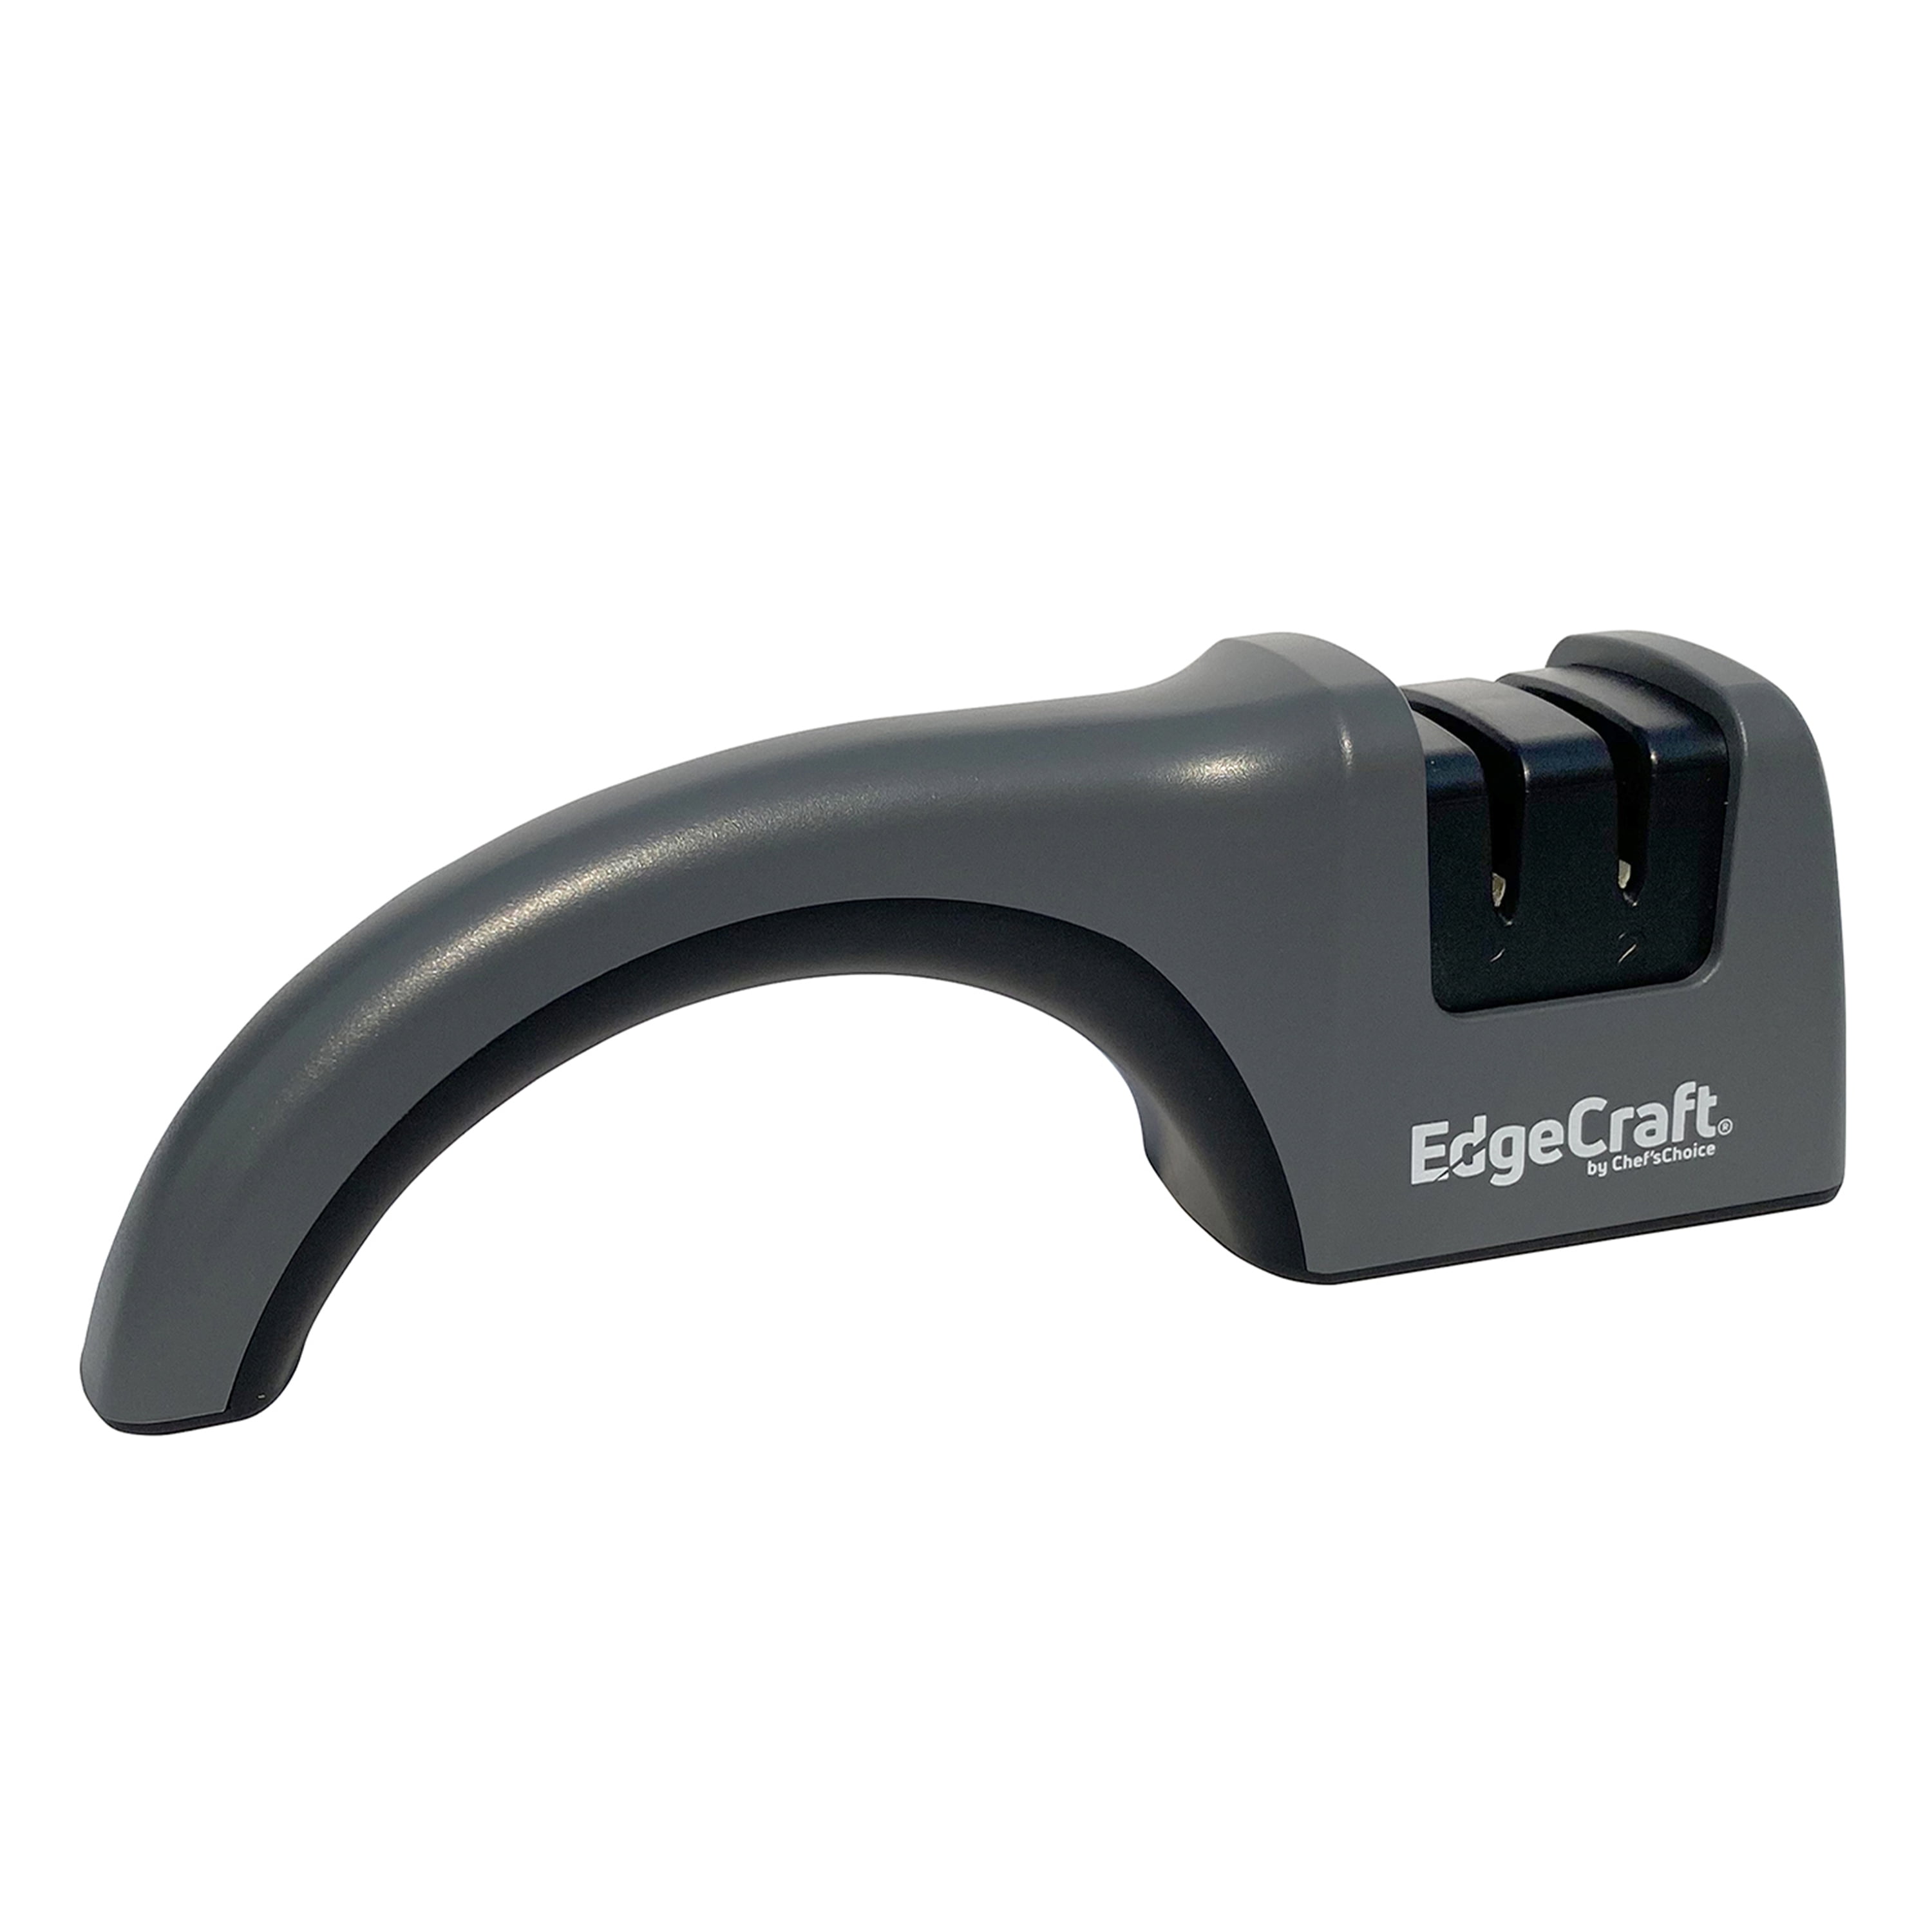 EdgeCraft Model 500 ScissorPro Scissors Sharpener